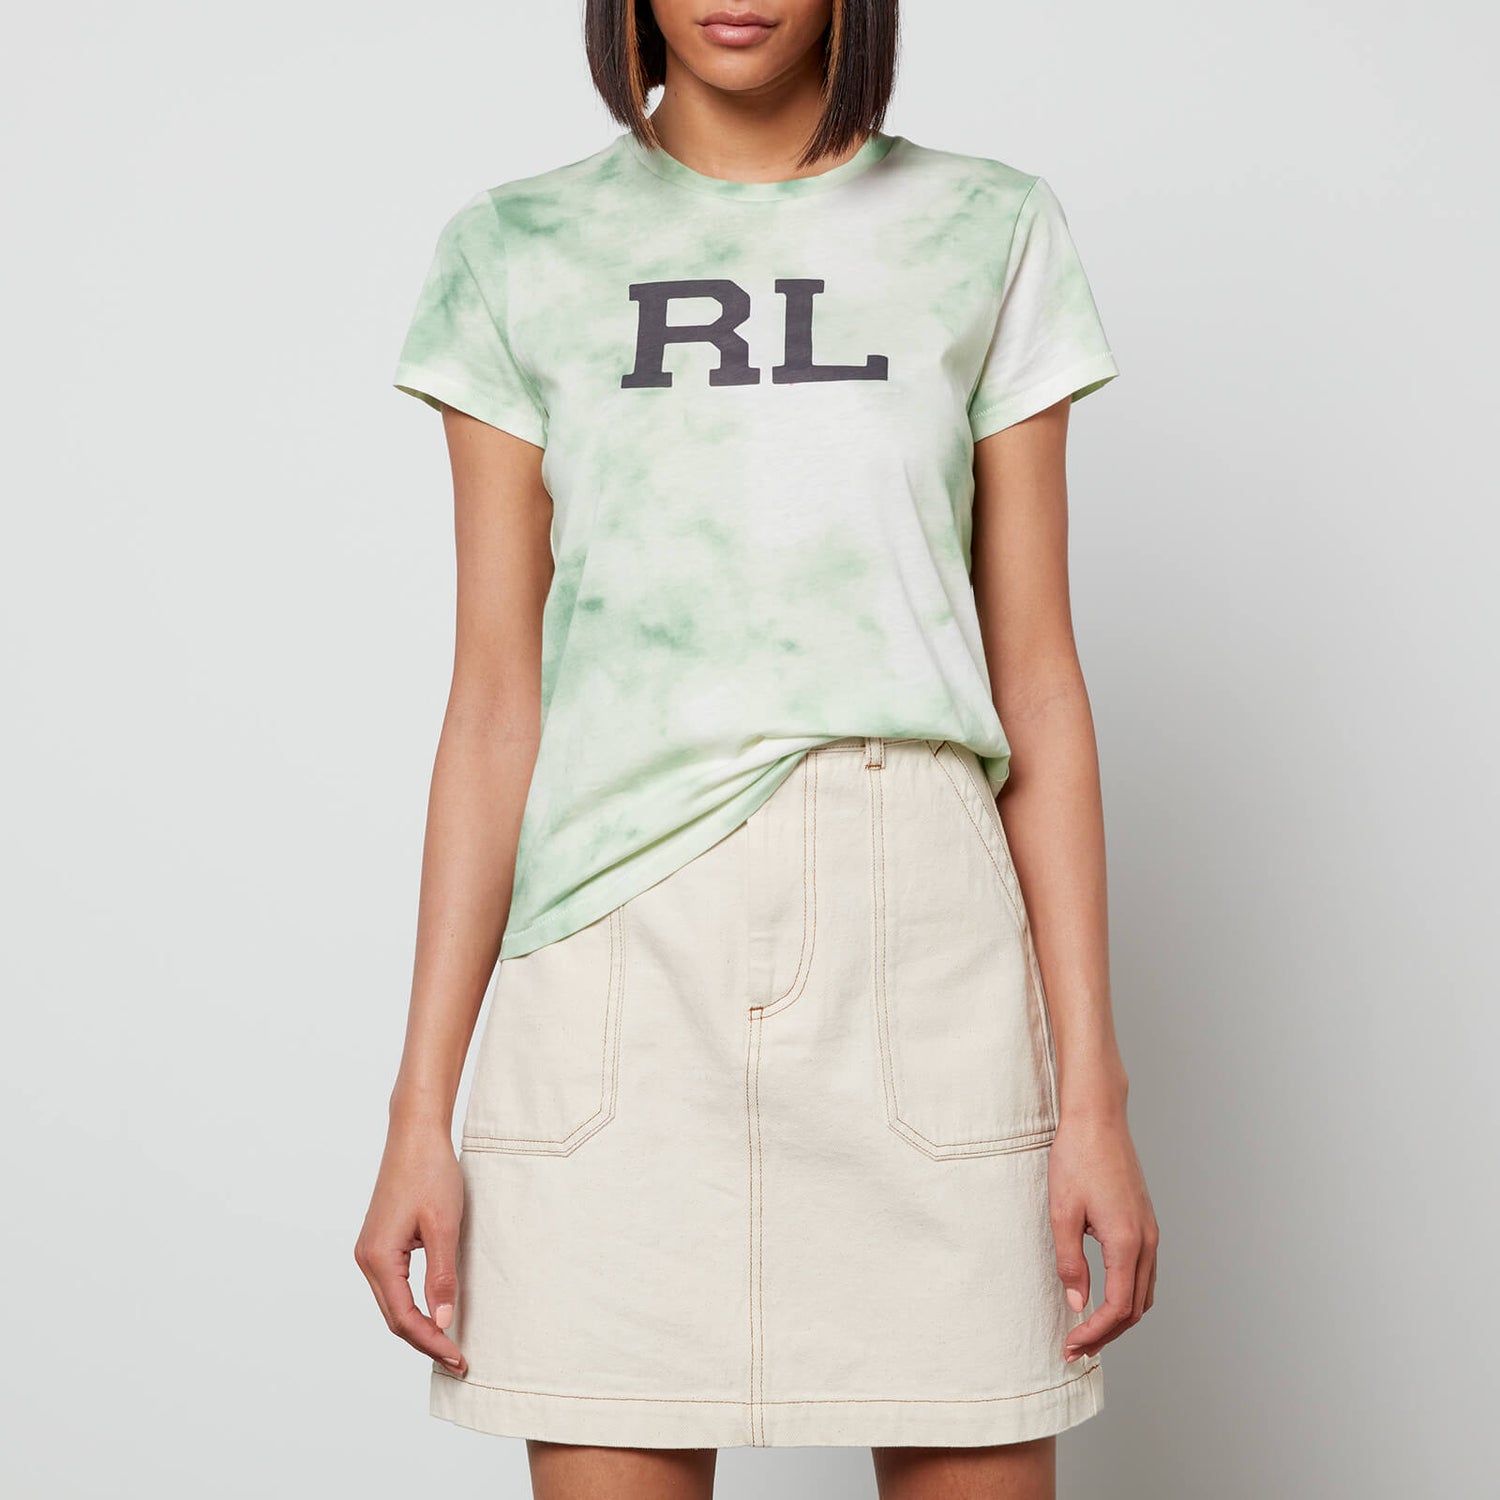 Polo Ralph Lauren Women's Rl Tie Dye Short Sleeve T-Shirt - Outback Green/Nevis - XS